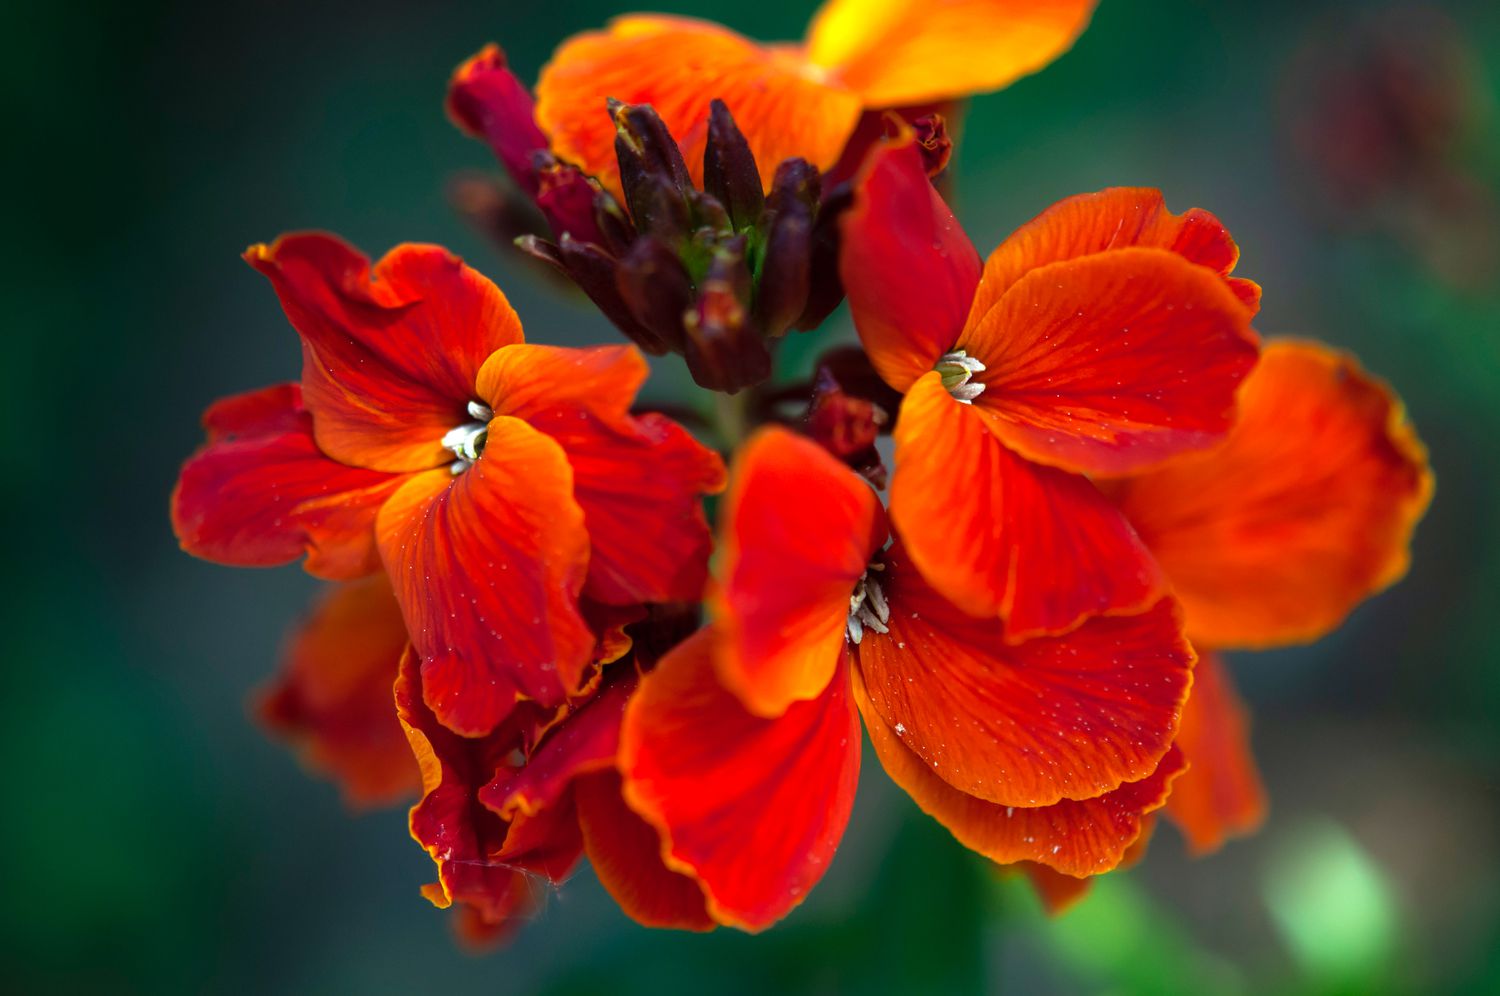 Feuerkönigspflanze mit roten Blüten und Knospen in Nahaufnahme